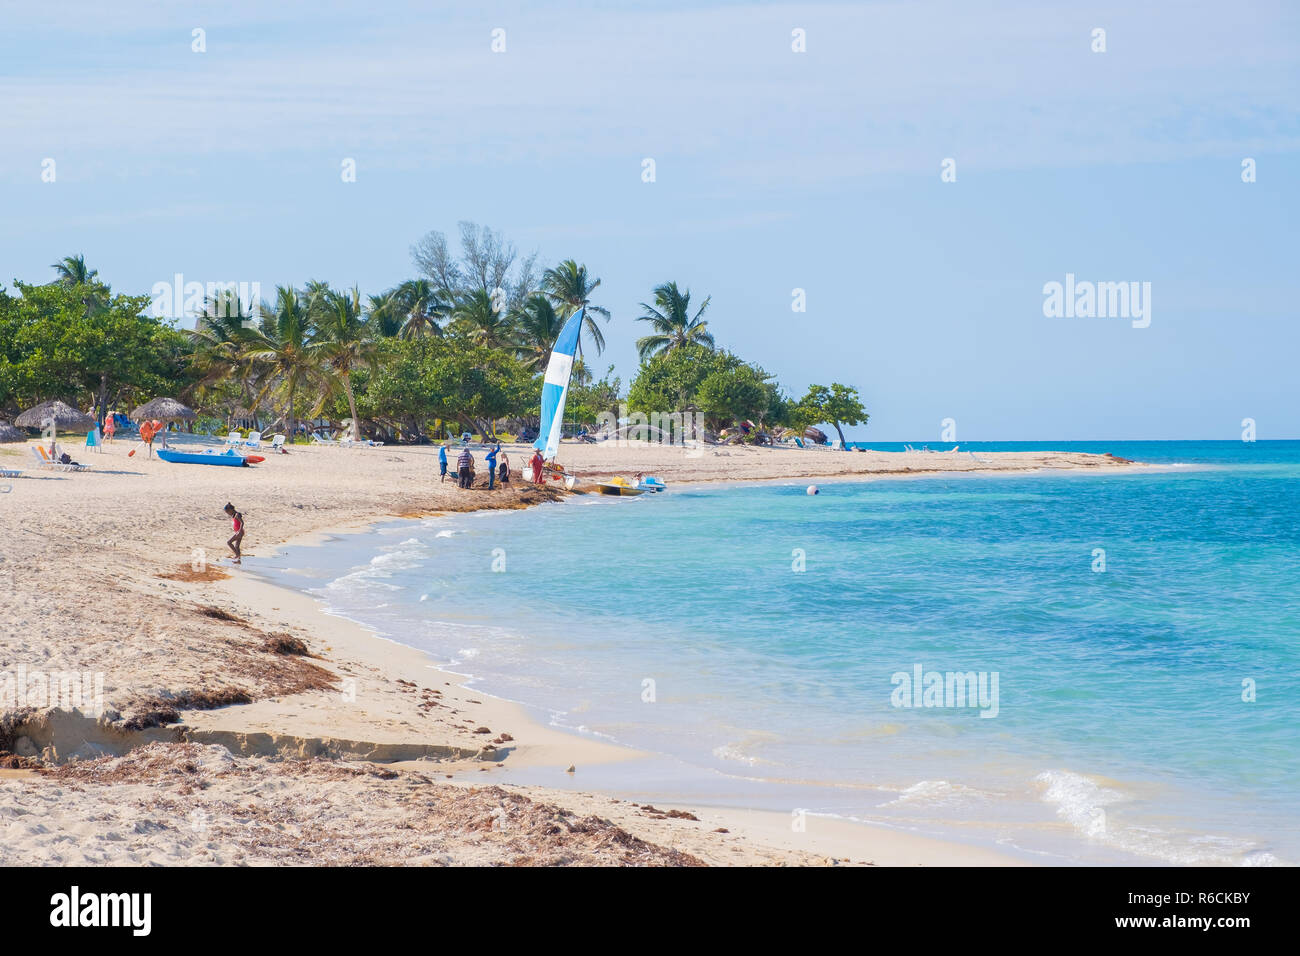 Belle plage de sable blanc et bleu océan dans la scène de plage de Cuba. Banque D'Images